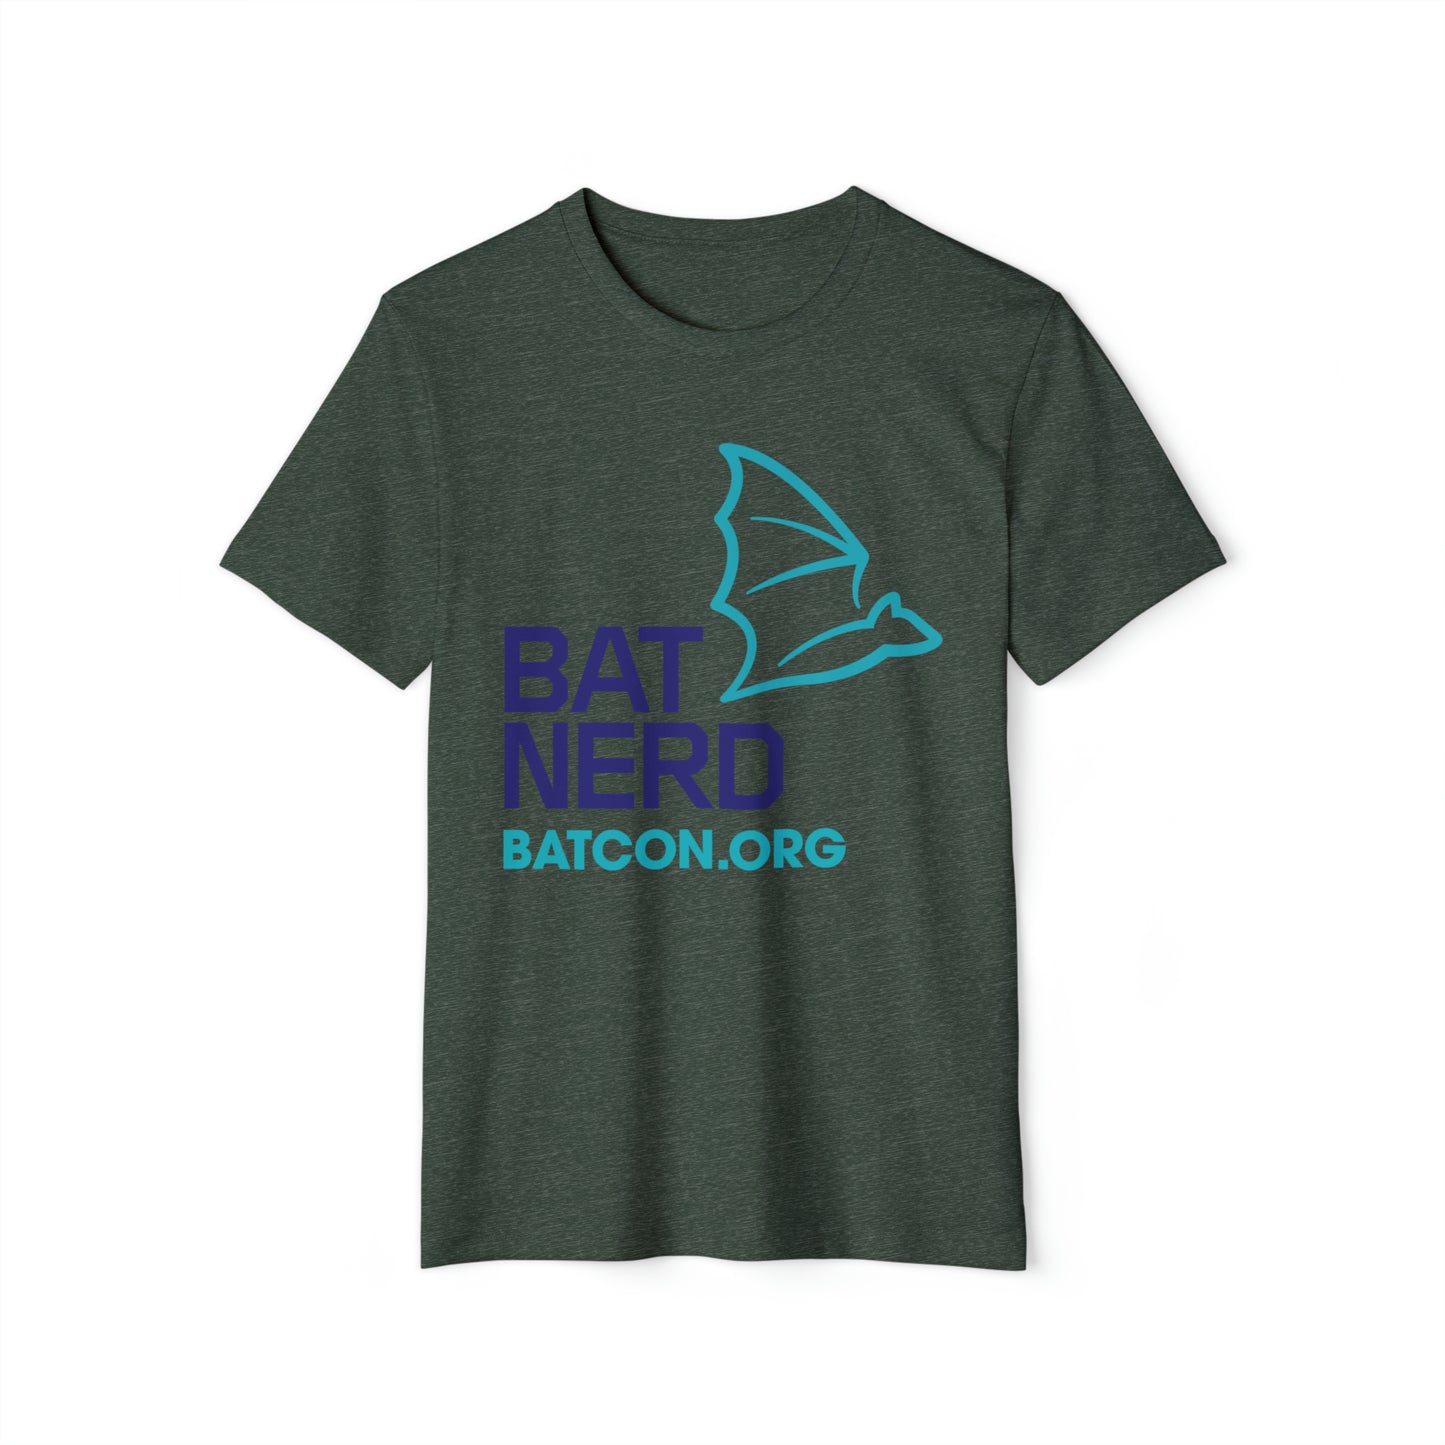 Bat Nerd - Camiseta unisex orgánica reciclada